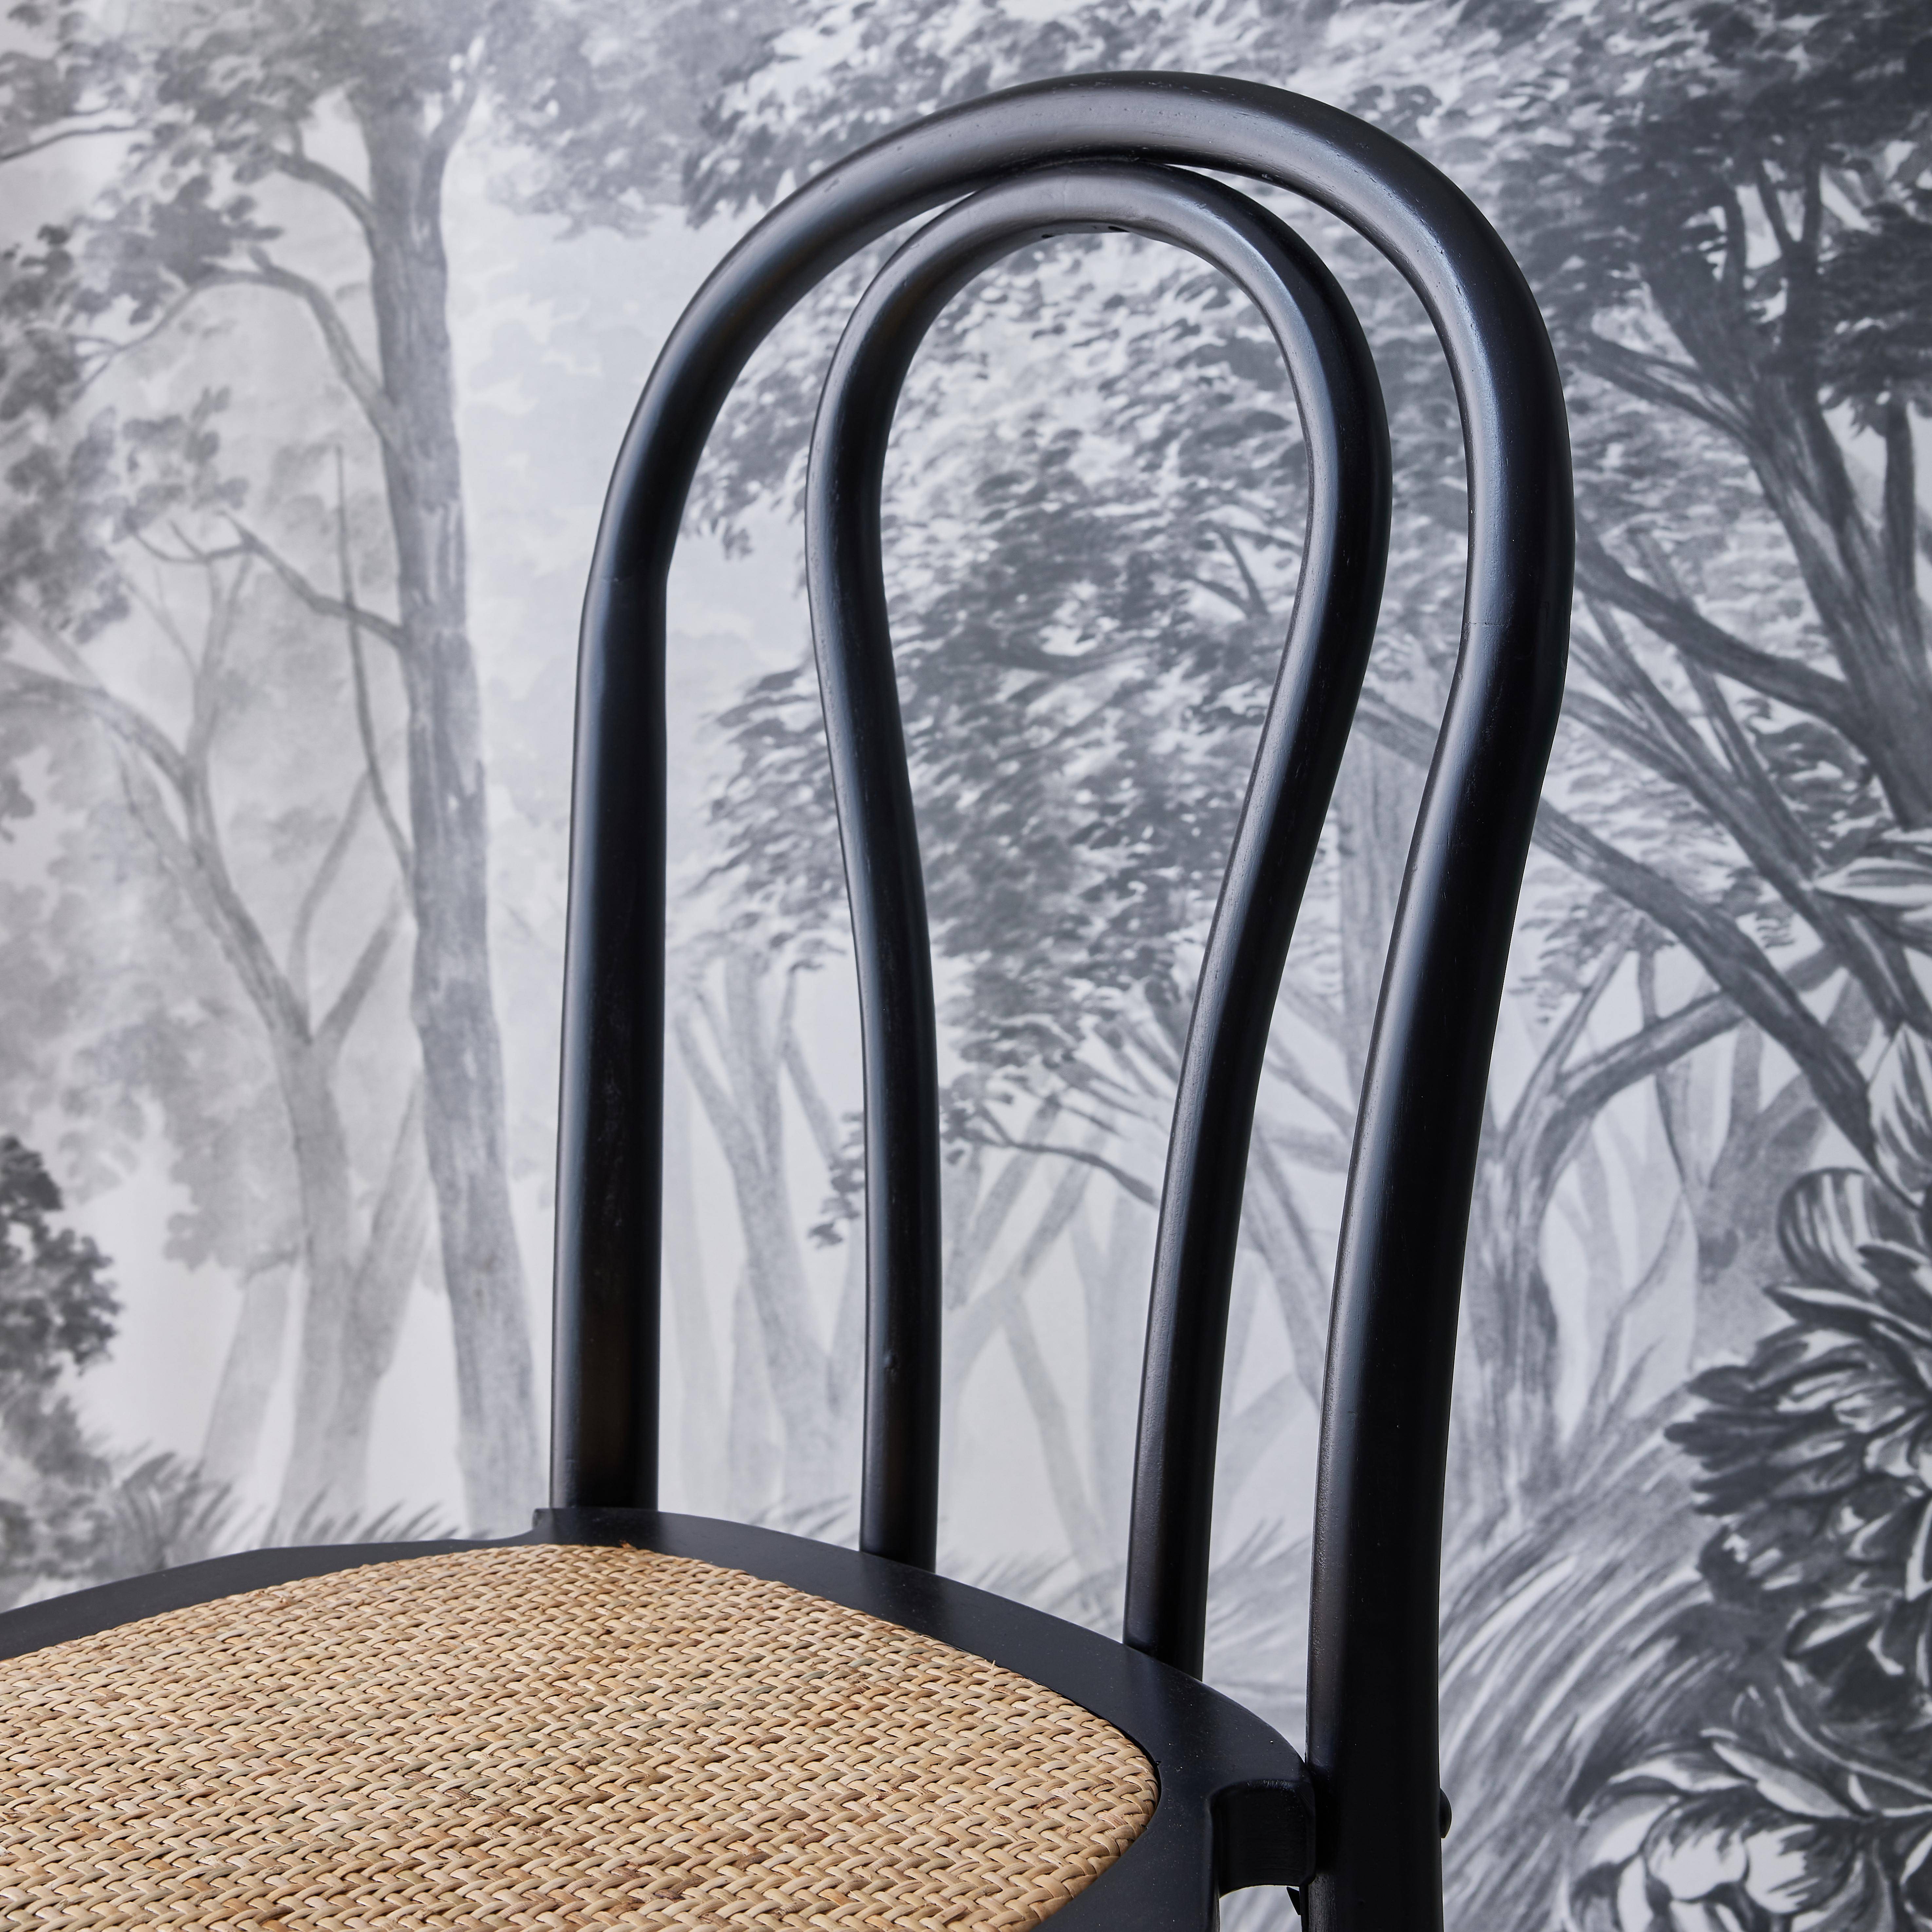 Lot de deux chaises vintage en bois avec assise en rotin et dossier arrondi coloris noir Photo3